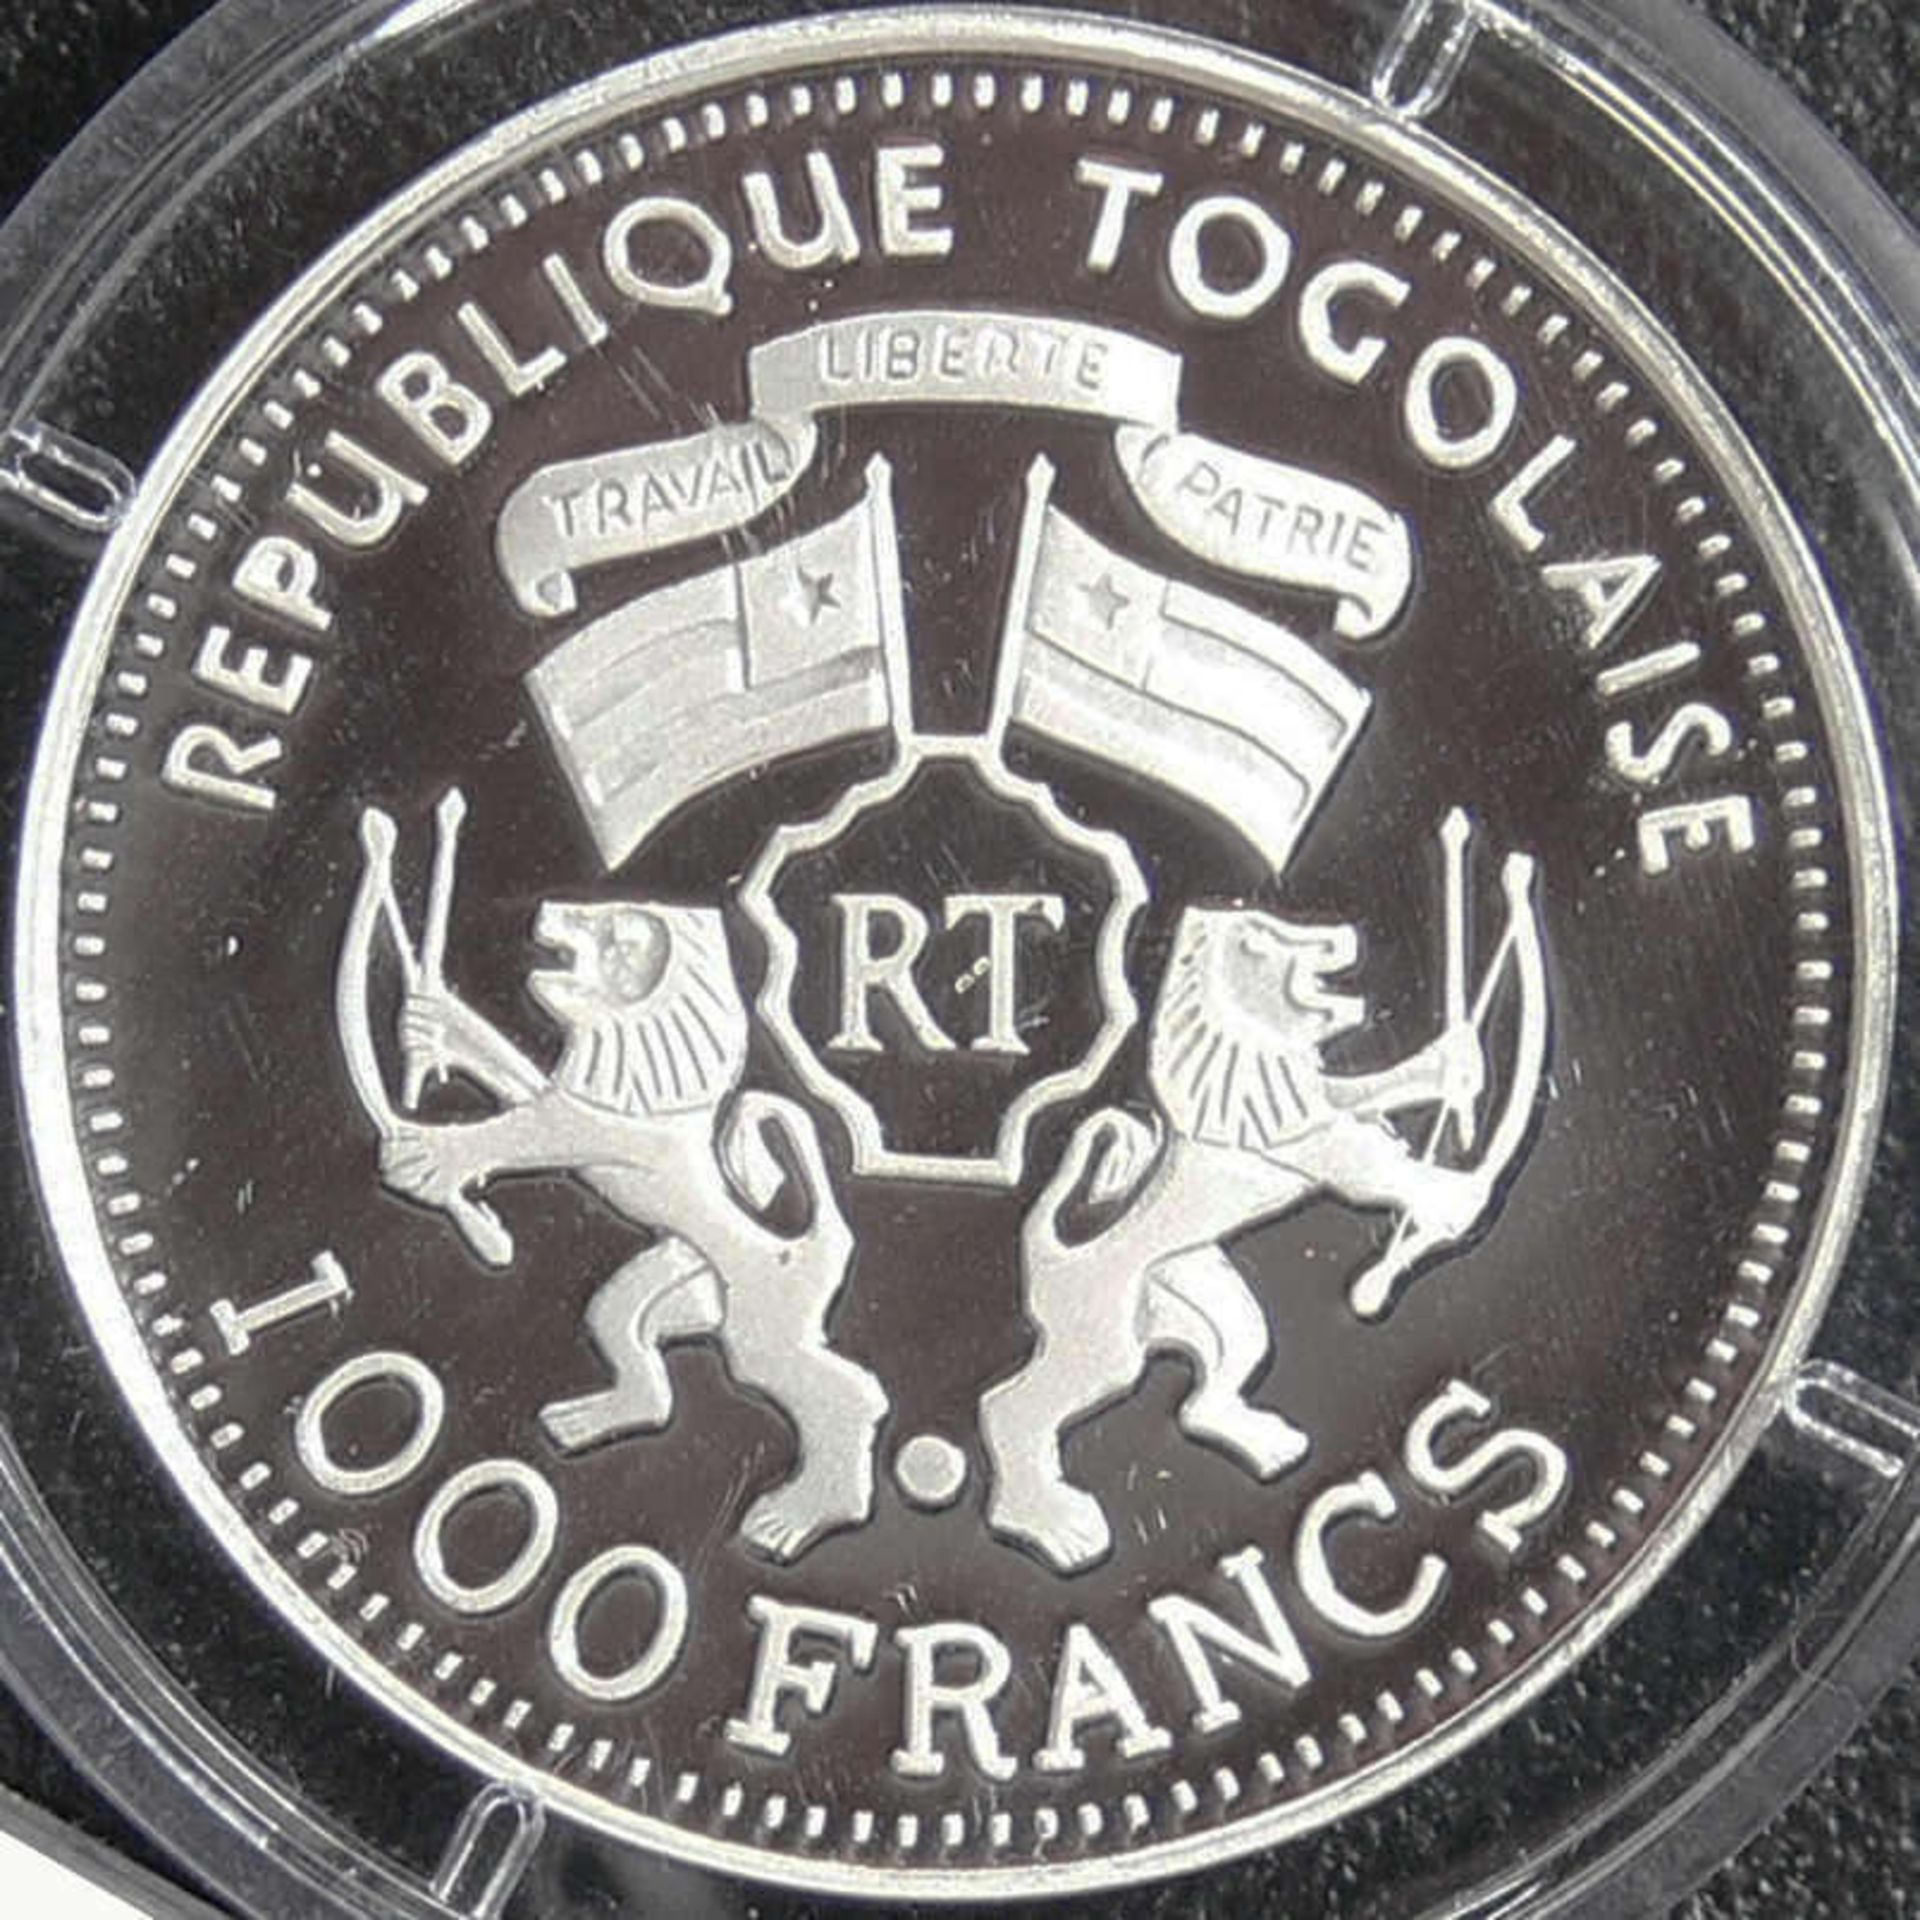 Togo 2000, 1000 Francs - Silbermünze "Pamir". Silber 999, Gewicht: ca. 15 g, Durchmesser: ca. 35 mm. - Bild 2 aus 2